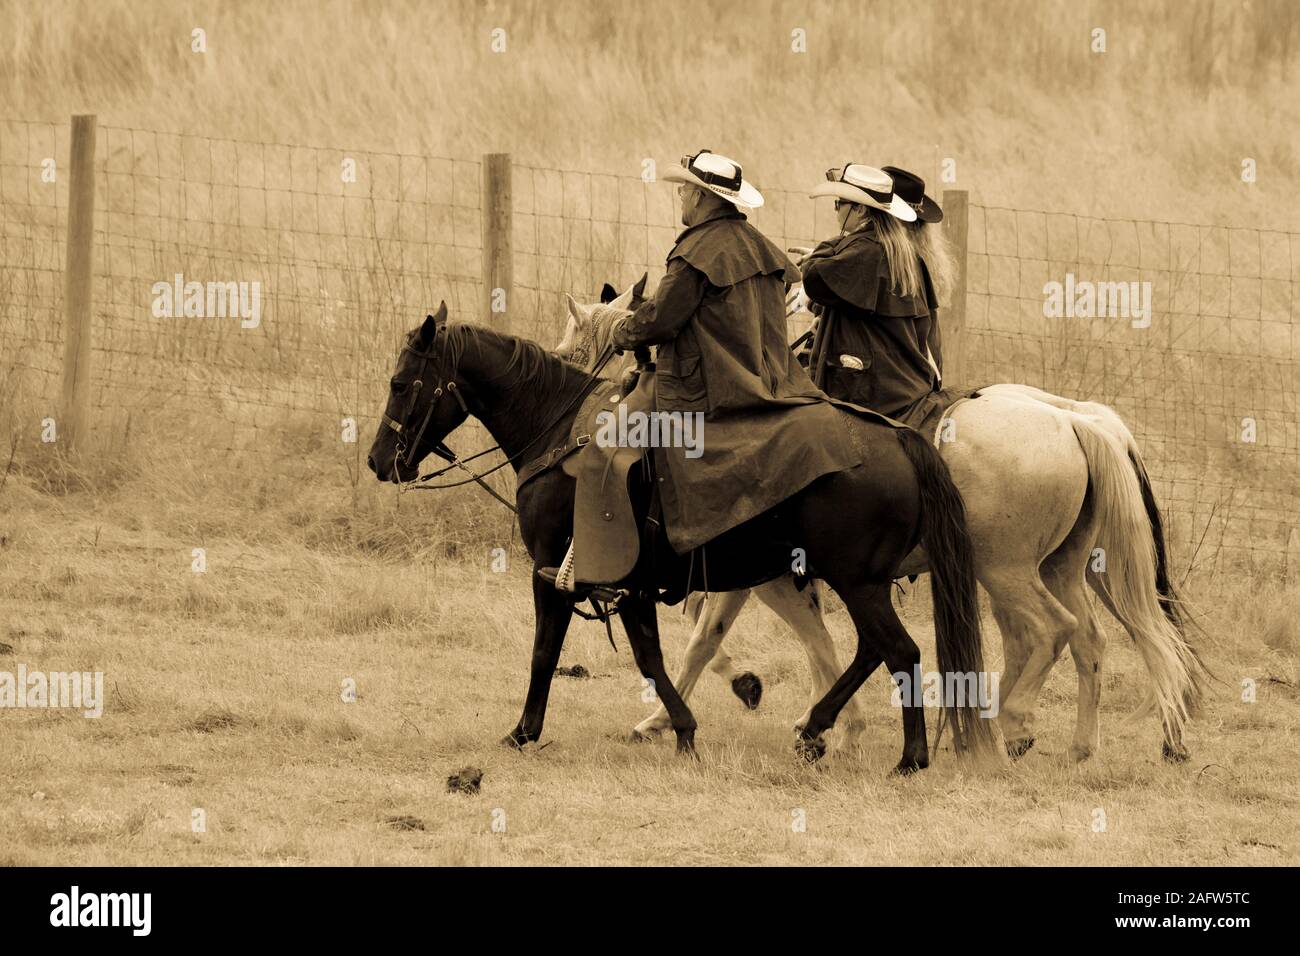 Settembre 27, 2019, Custer State Park, il Dakota del Sud, Stati Uniti d'America - cowboy e cowgirls annuale Custer State Park Buffalo Roundup Foto Stock